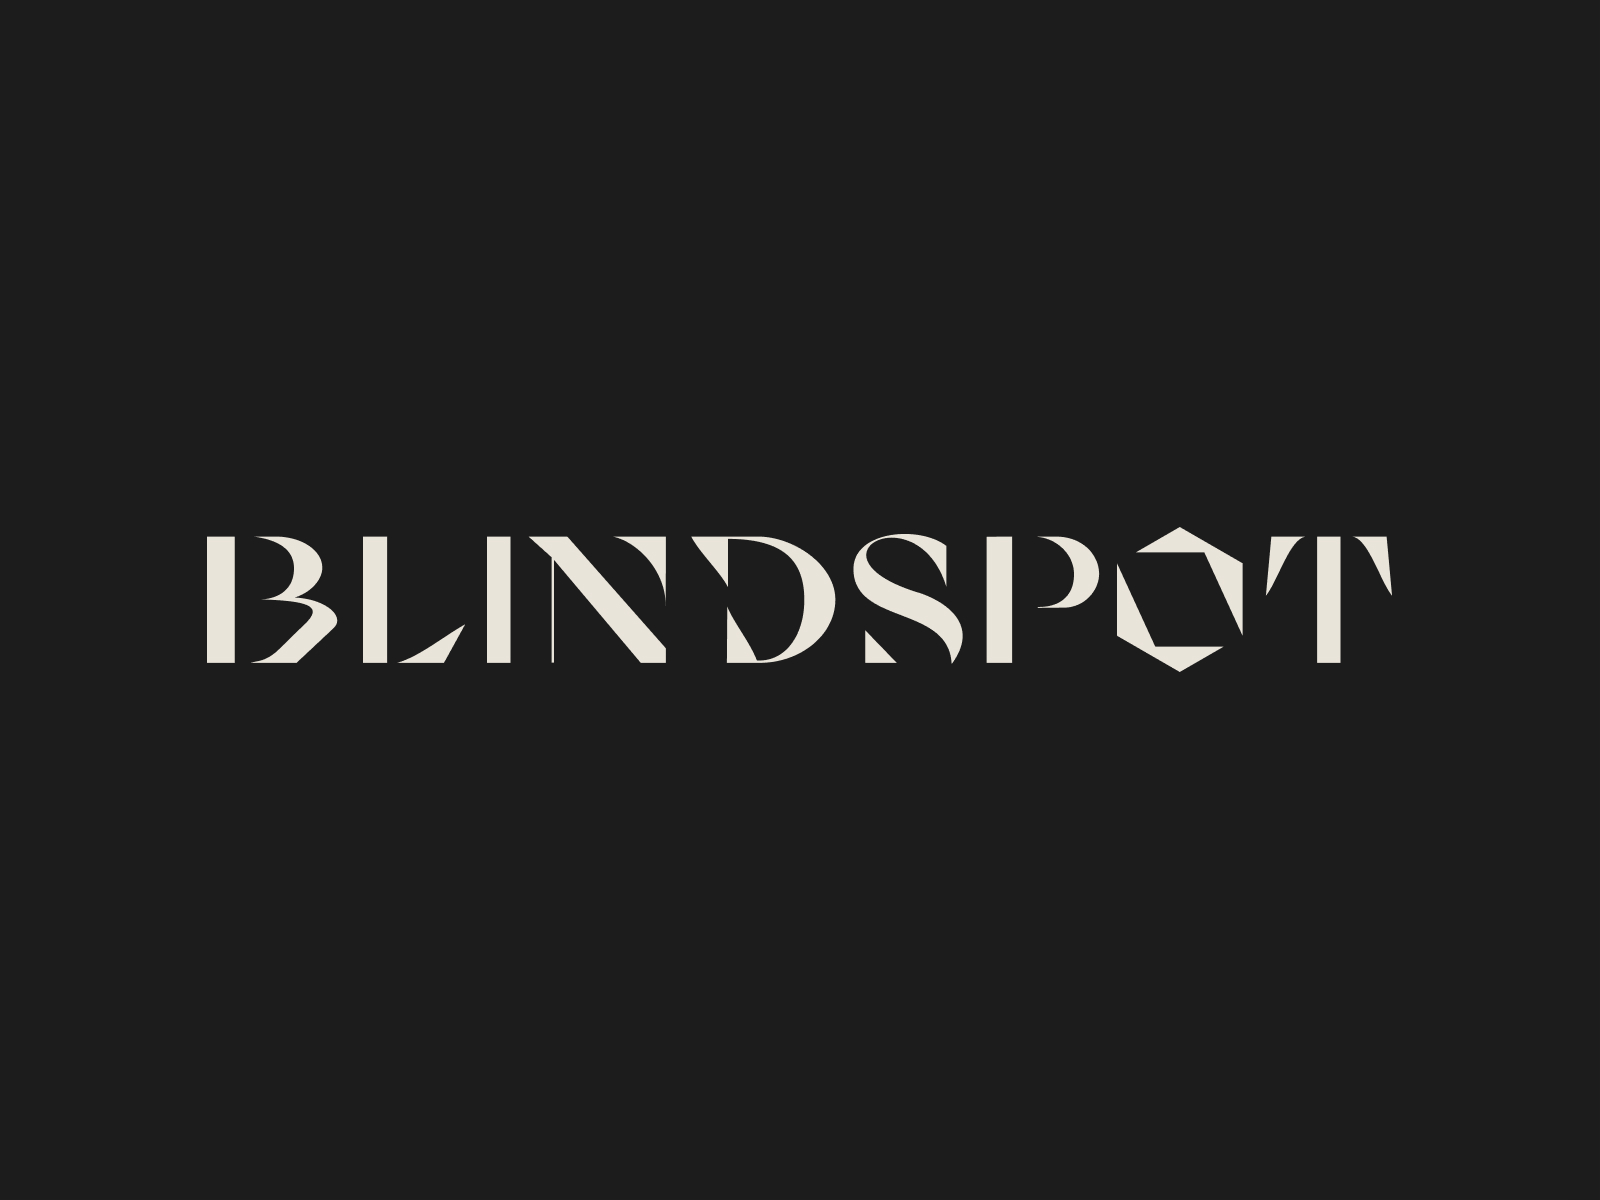 Blindspot Digital Agency